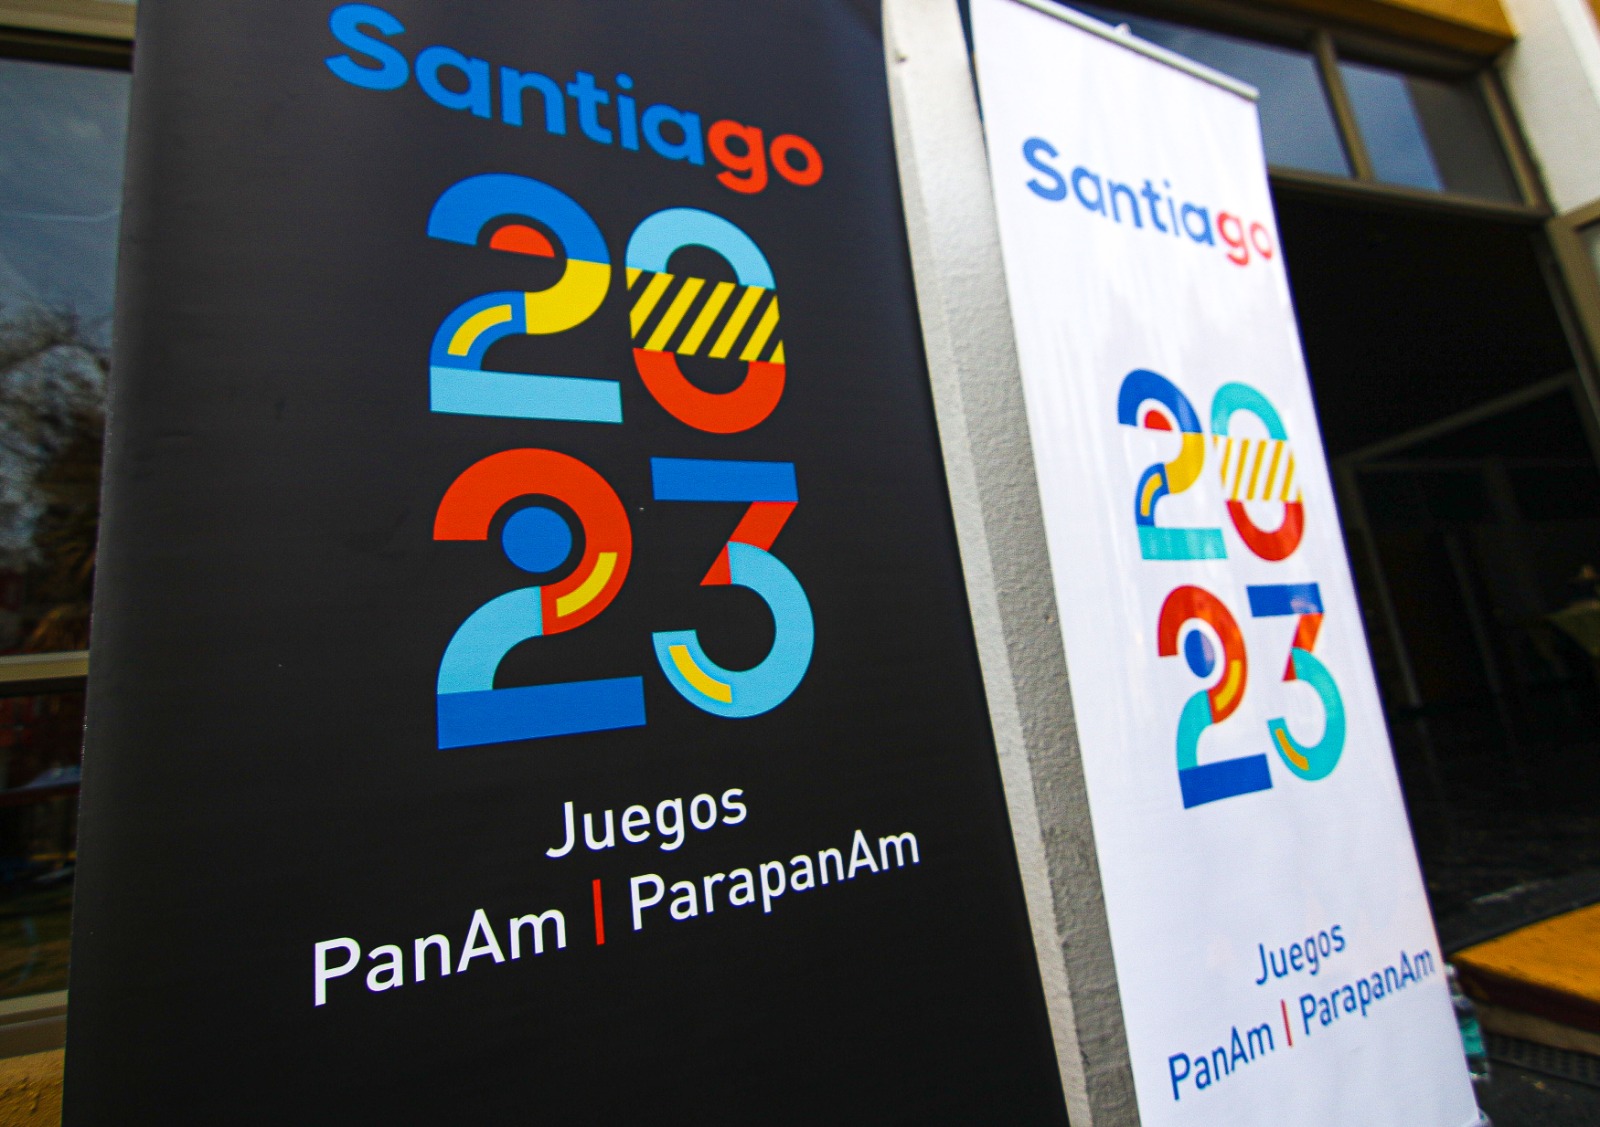 Santiago 2023 confirma querella por uso de los Juegos en video de corte político